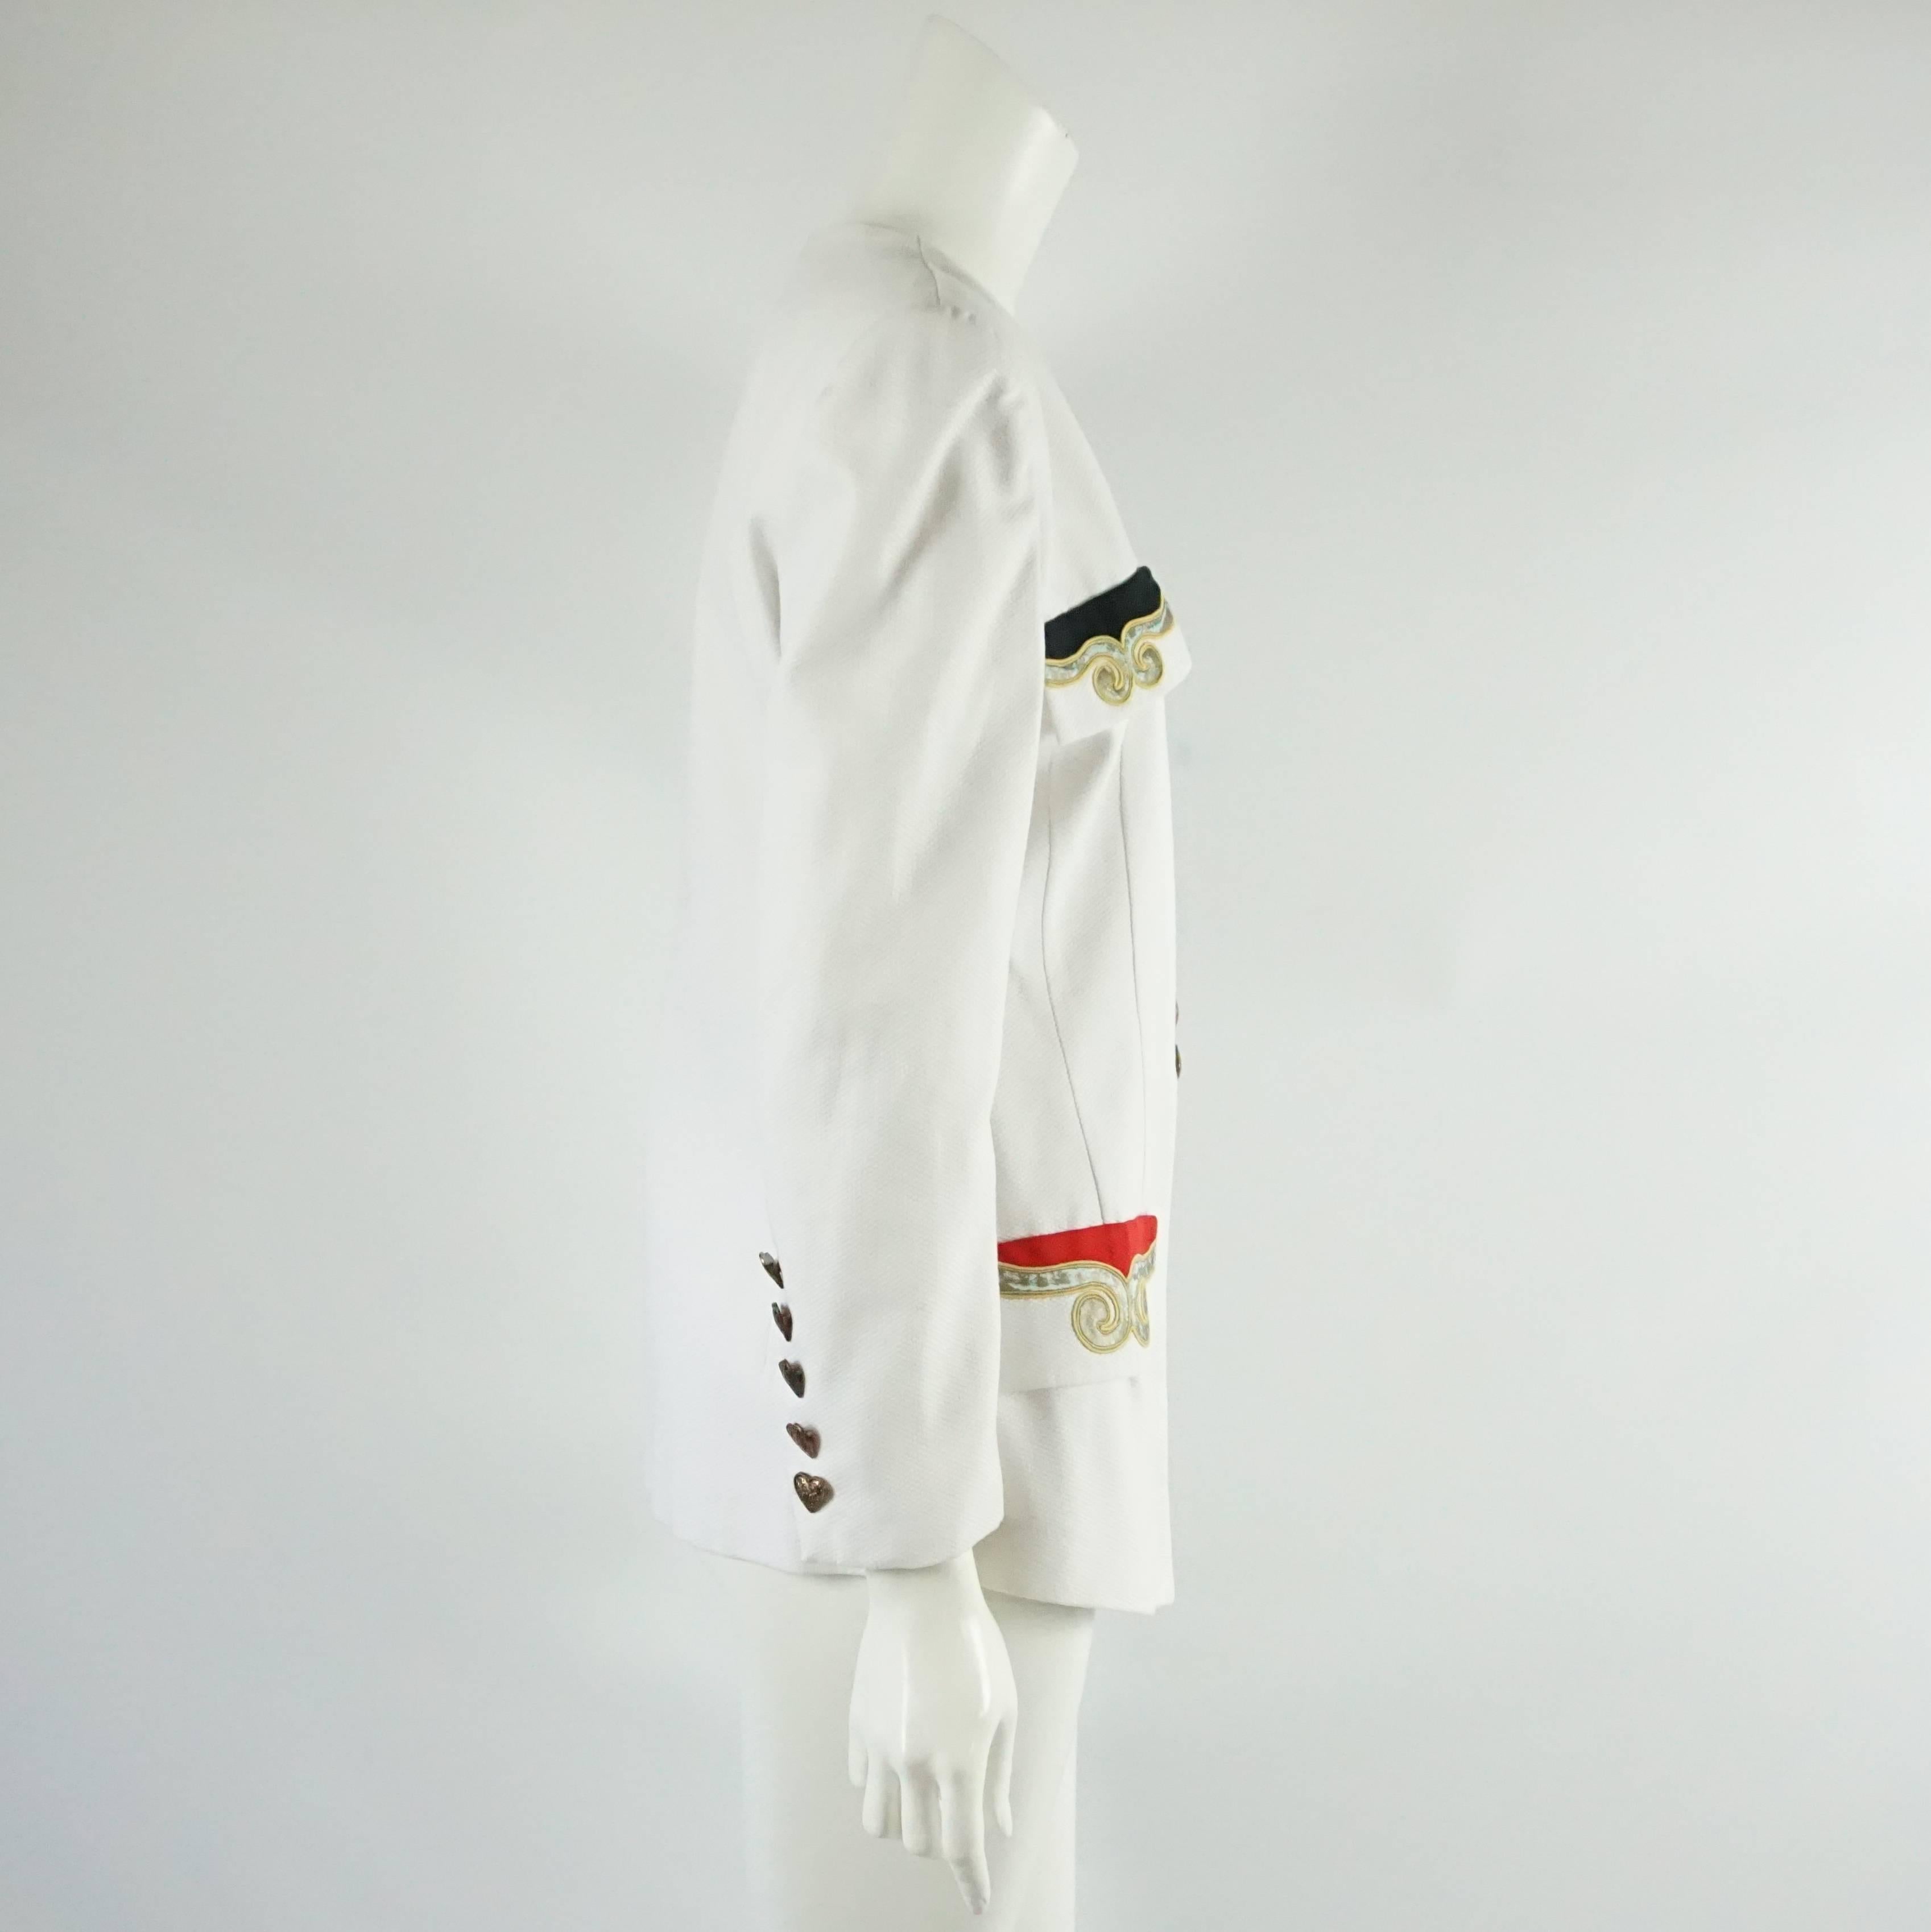 Cette veste blanche de Pierre Balmain des années 1990 comporte 4 poches sur le devant. Les poches sont brodées en rouge ou en noir avec de l'or. Cette veste est en très bon état vintage et comporte 8 boutons en bronze en forme de cœur sur le devant.